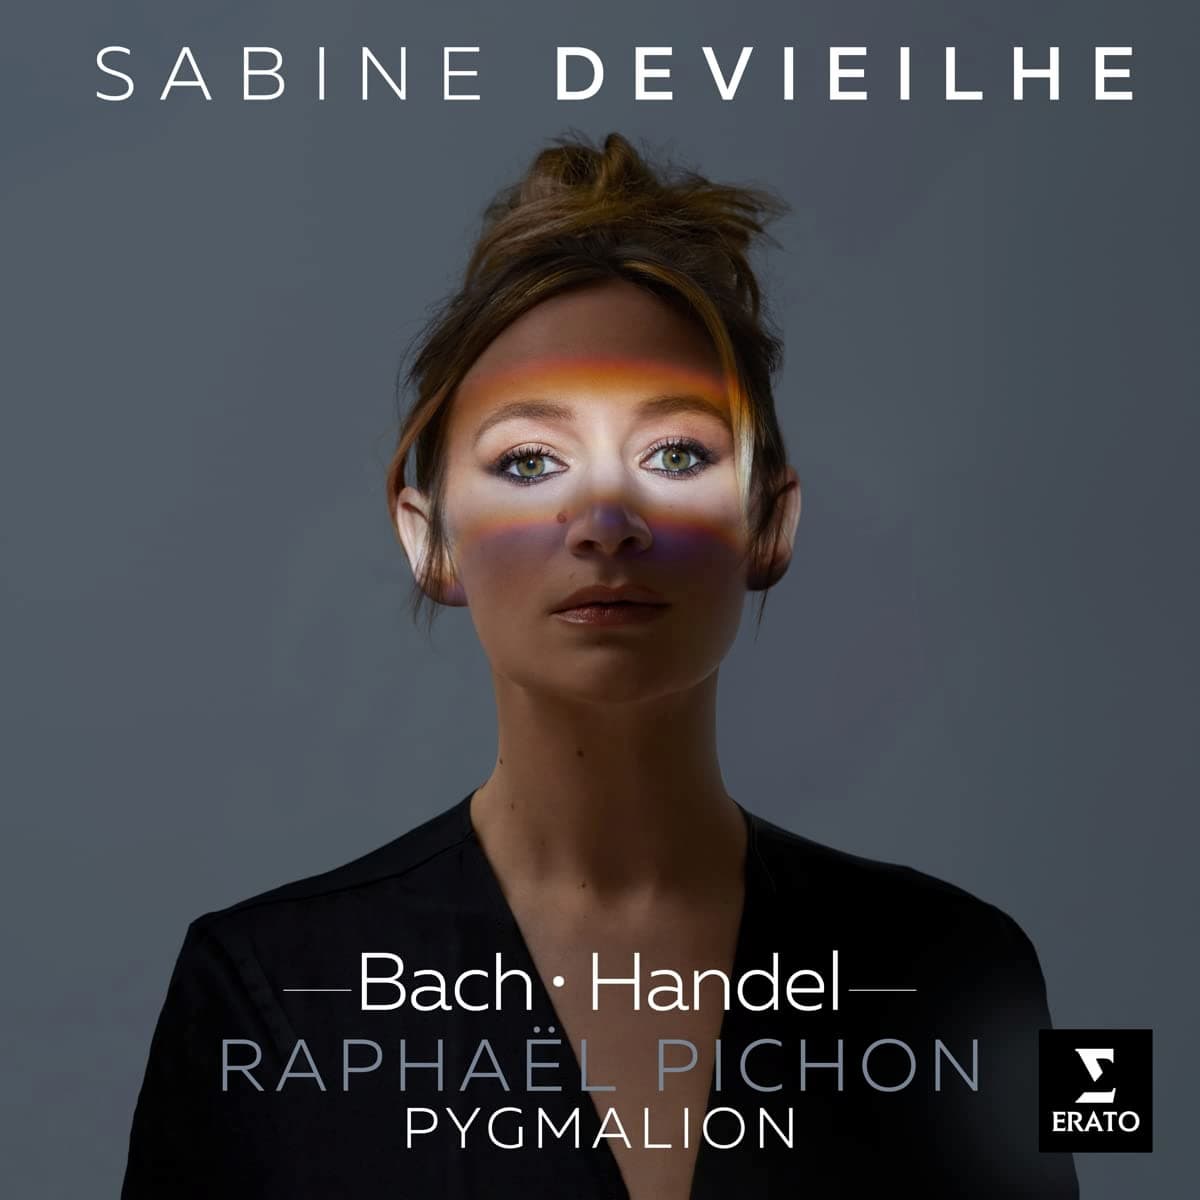 Album cover of Sabine Devieilhe's Bach.Handel recording